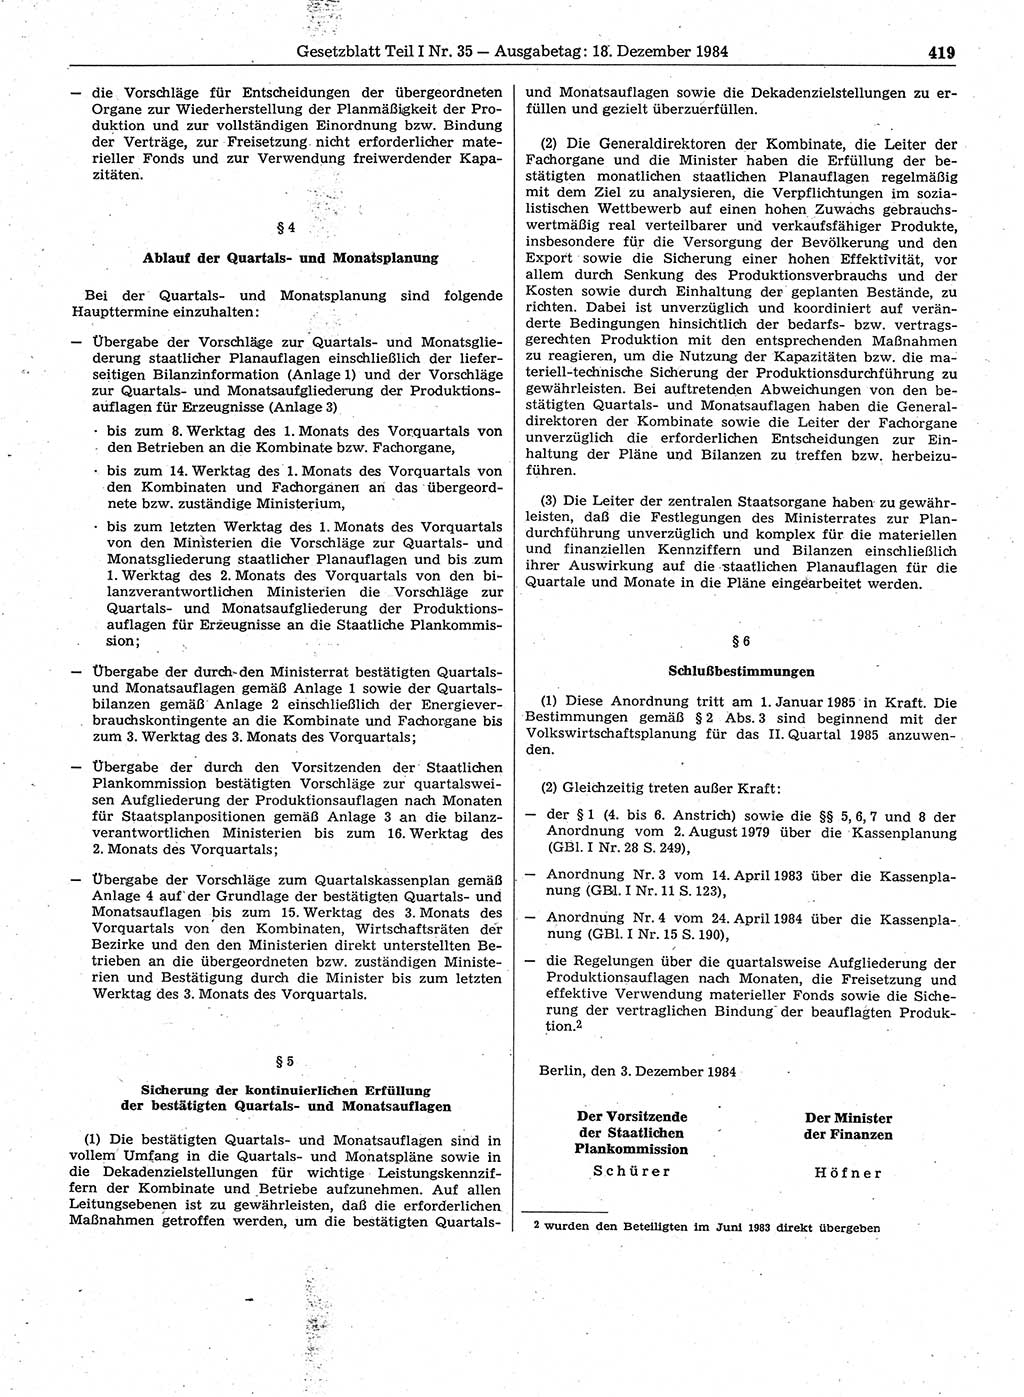 Gesetzblatt (GBl.) der Deutschen Demokratischen Republik (DDR) Teil Ⅰ 1984, Seite 419 (GBl. DDR Ⅰ 1984, S. 419)